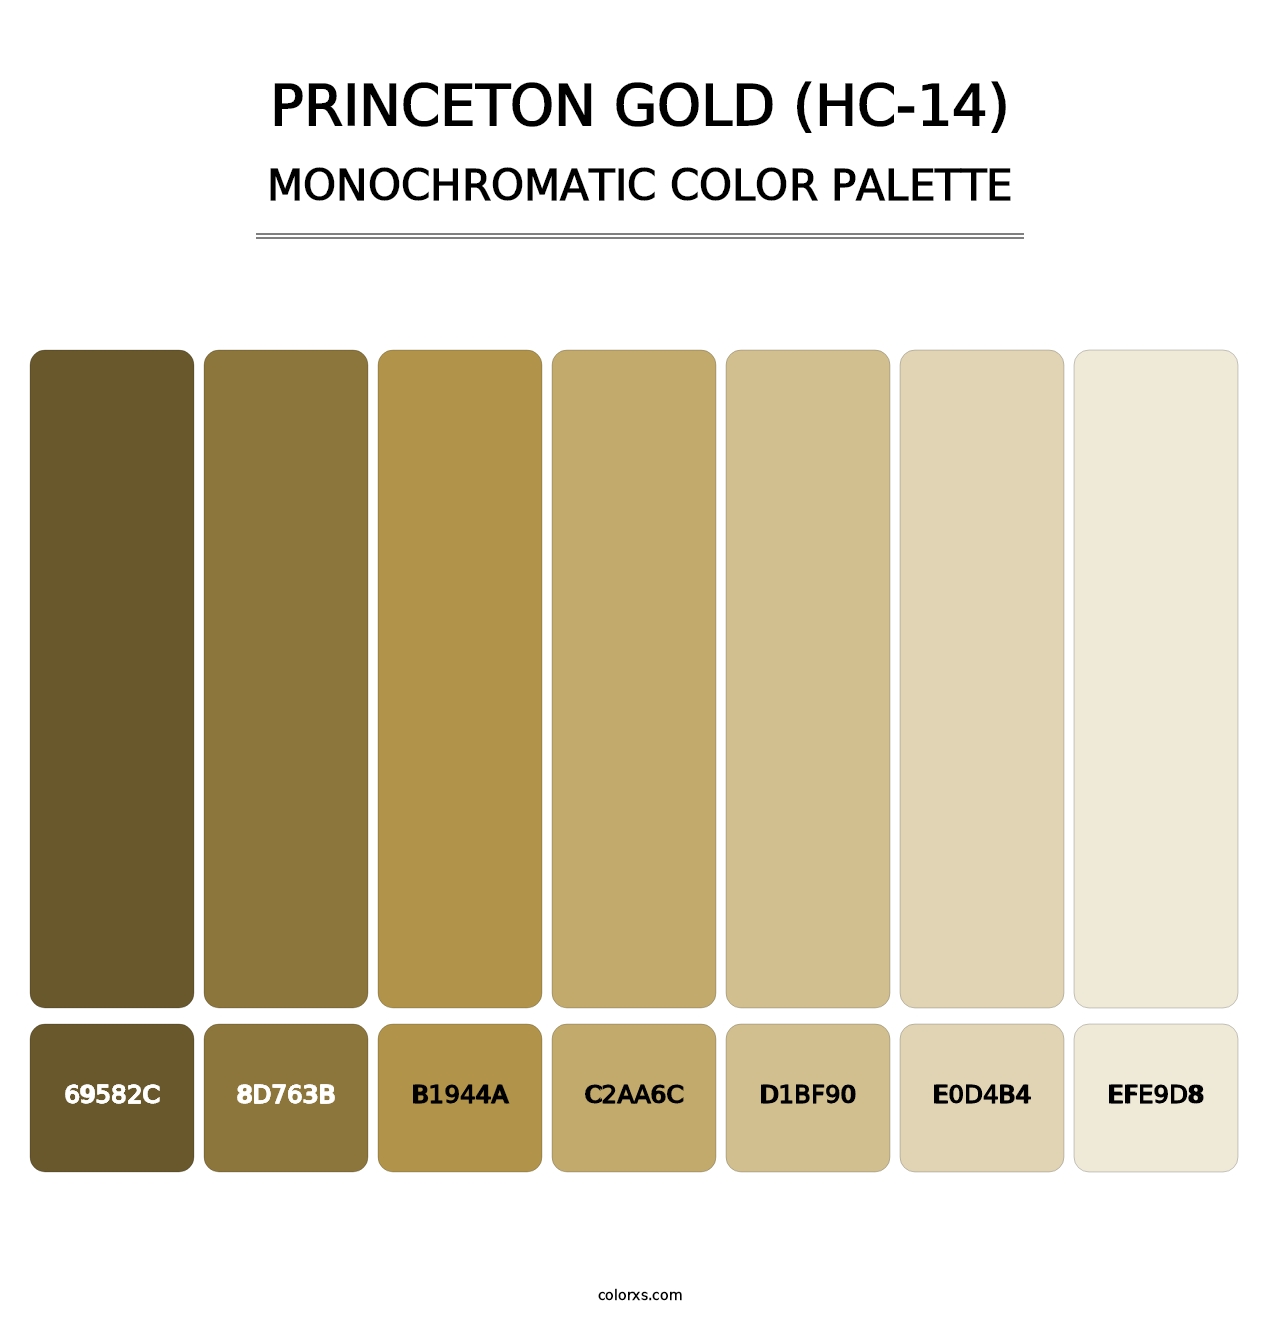 Princeton Gold (HC-14) - Monochromatic Color Palette